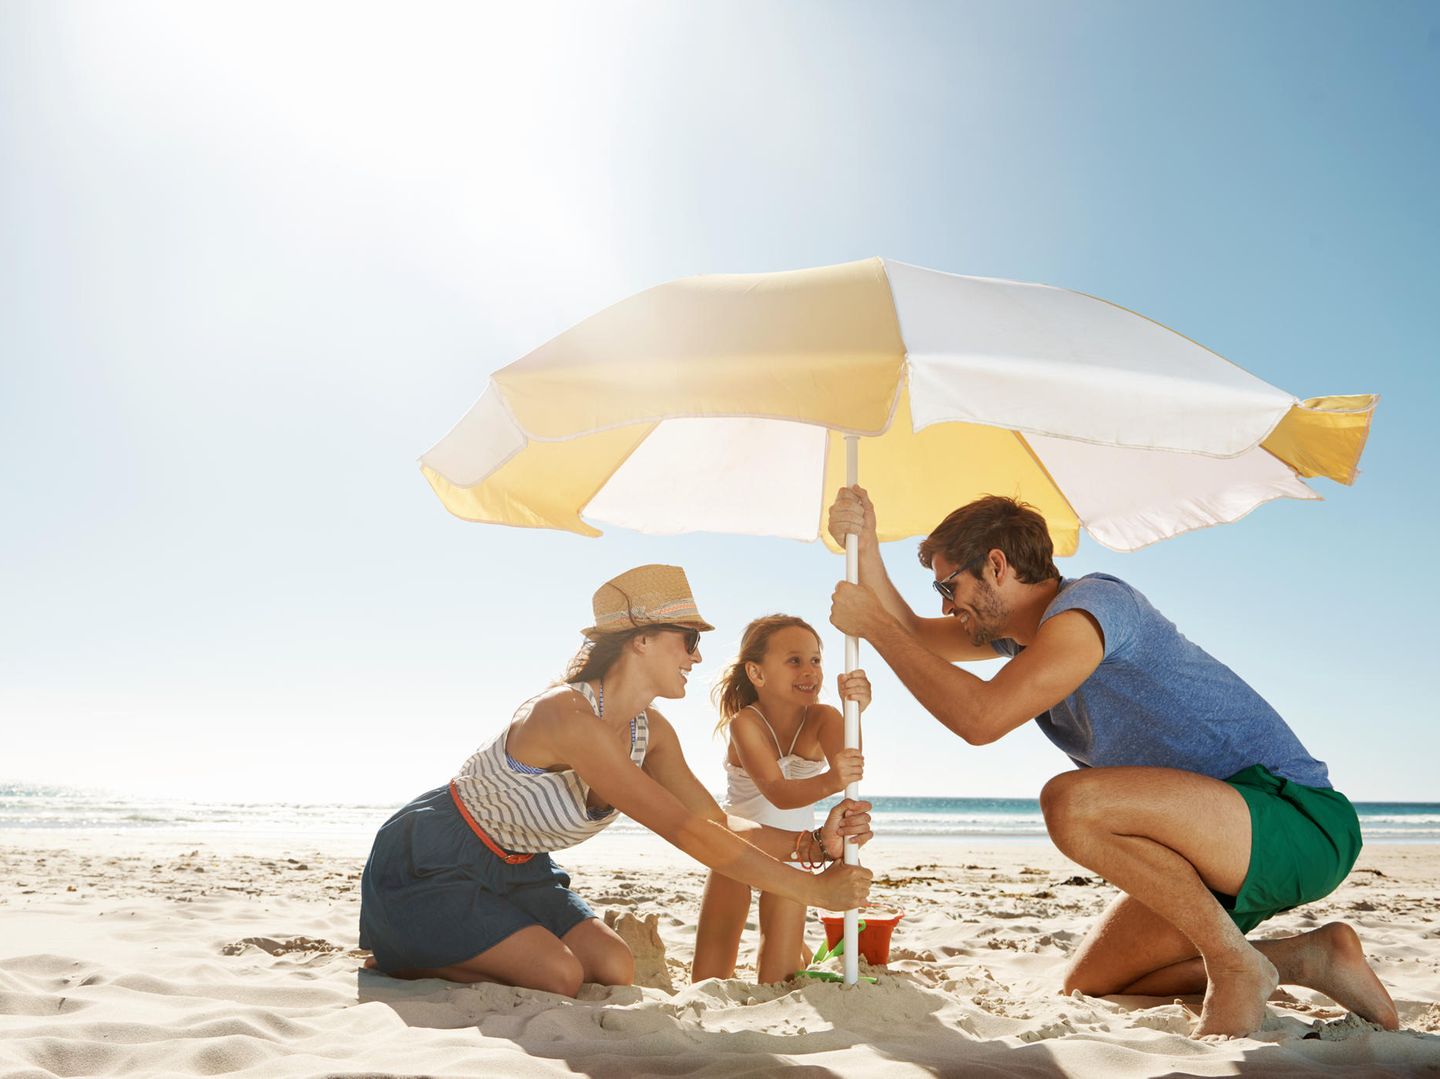 Sonnenschutz: So schützen Sie Ihre Haut richtig und frühzeitig